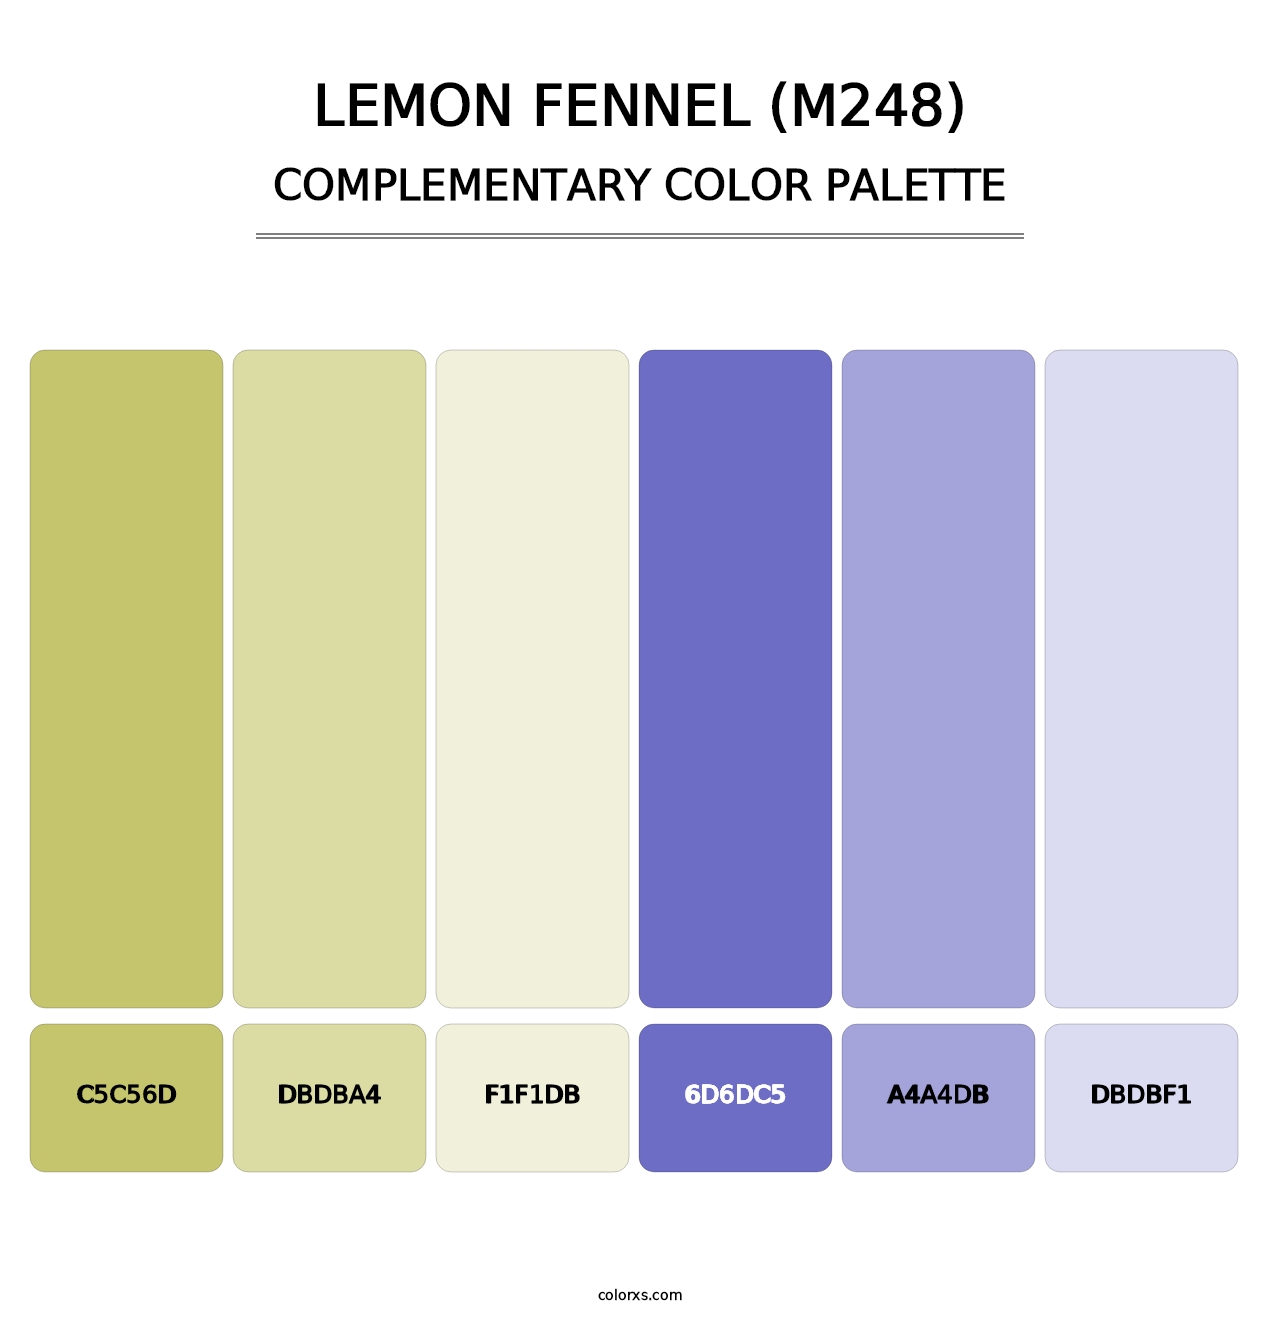 Lemon Fennel (M248) - Complementary Color Palette